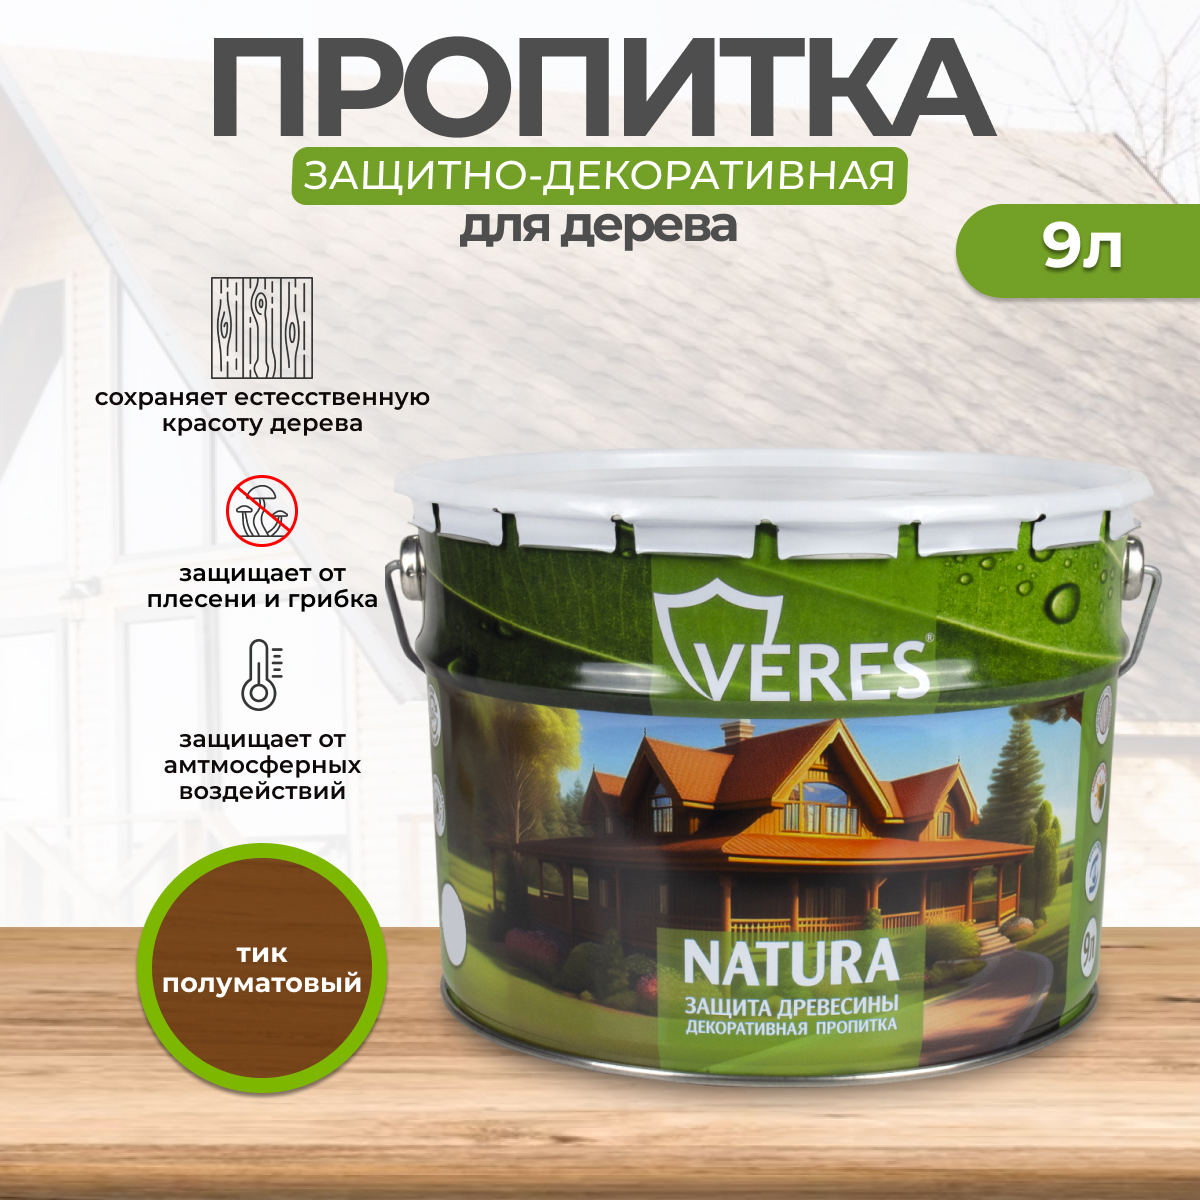 Декоративная пропитка для дерева Veres Natura полуматовая 9 л тик, VR-130